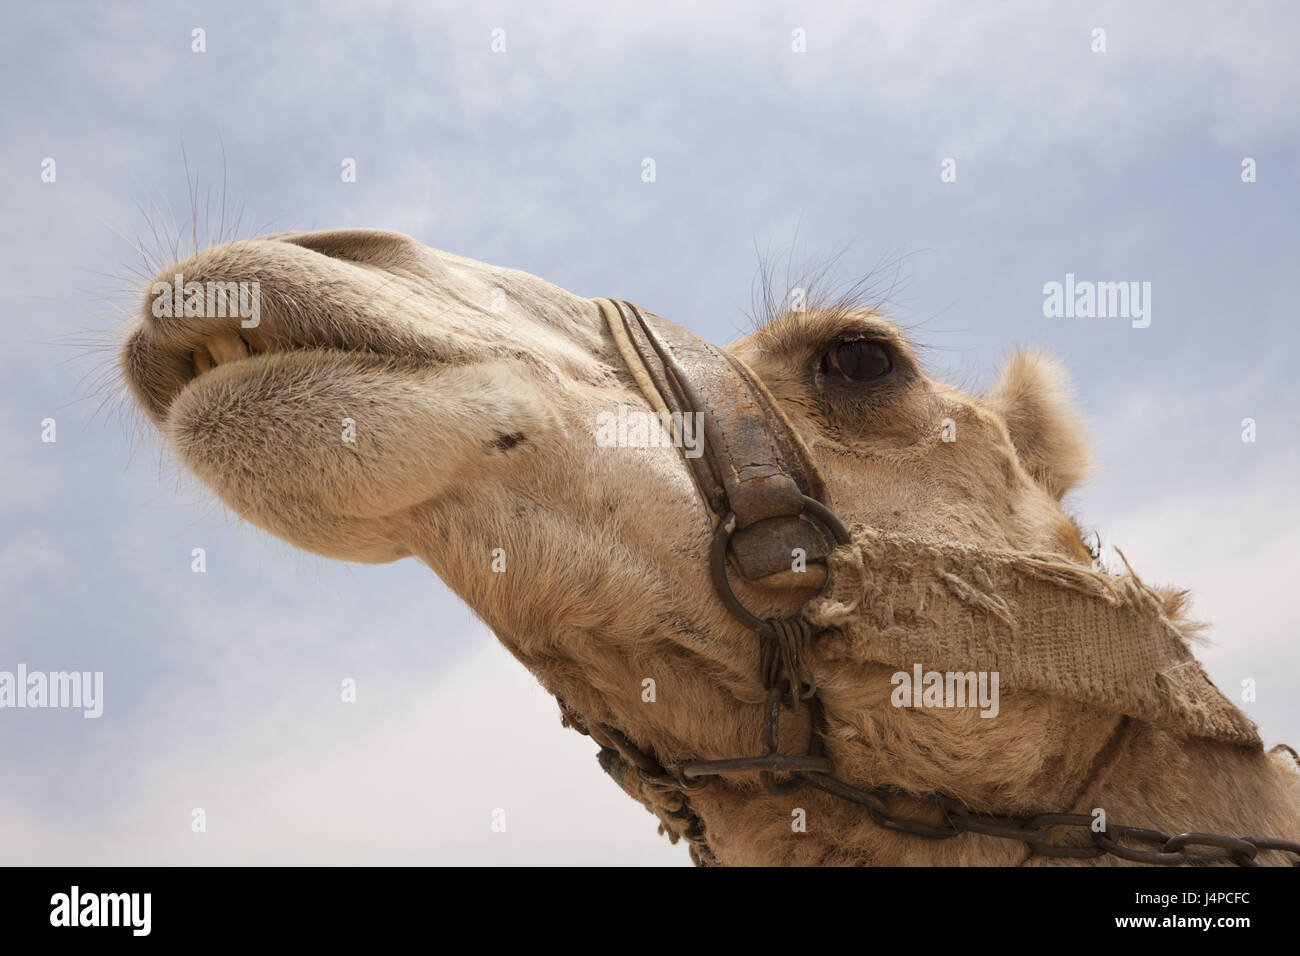 Dromedary, Arabian camel, Camelus dromedarius, Egypt, Dahschur, portrait, Stock Photo